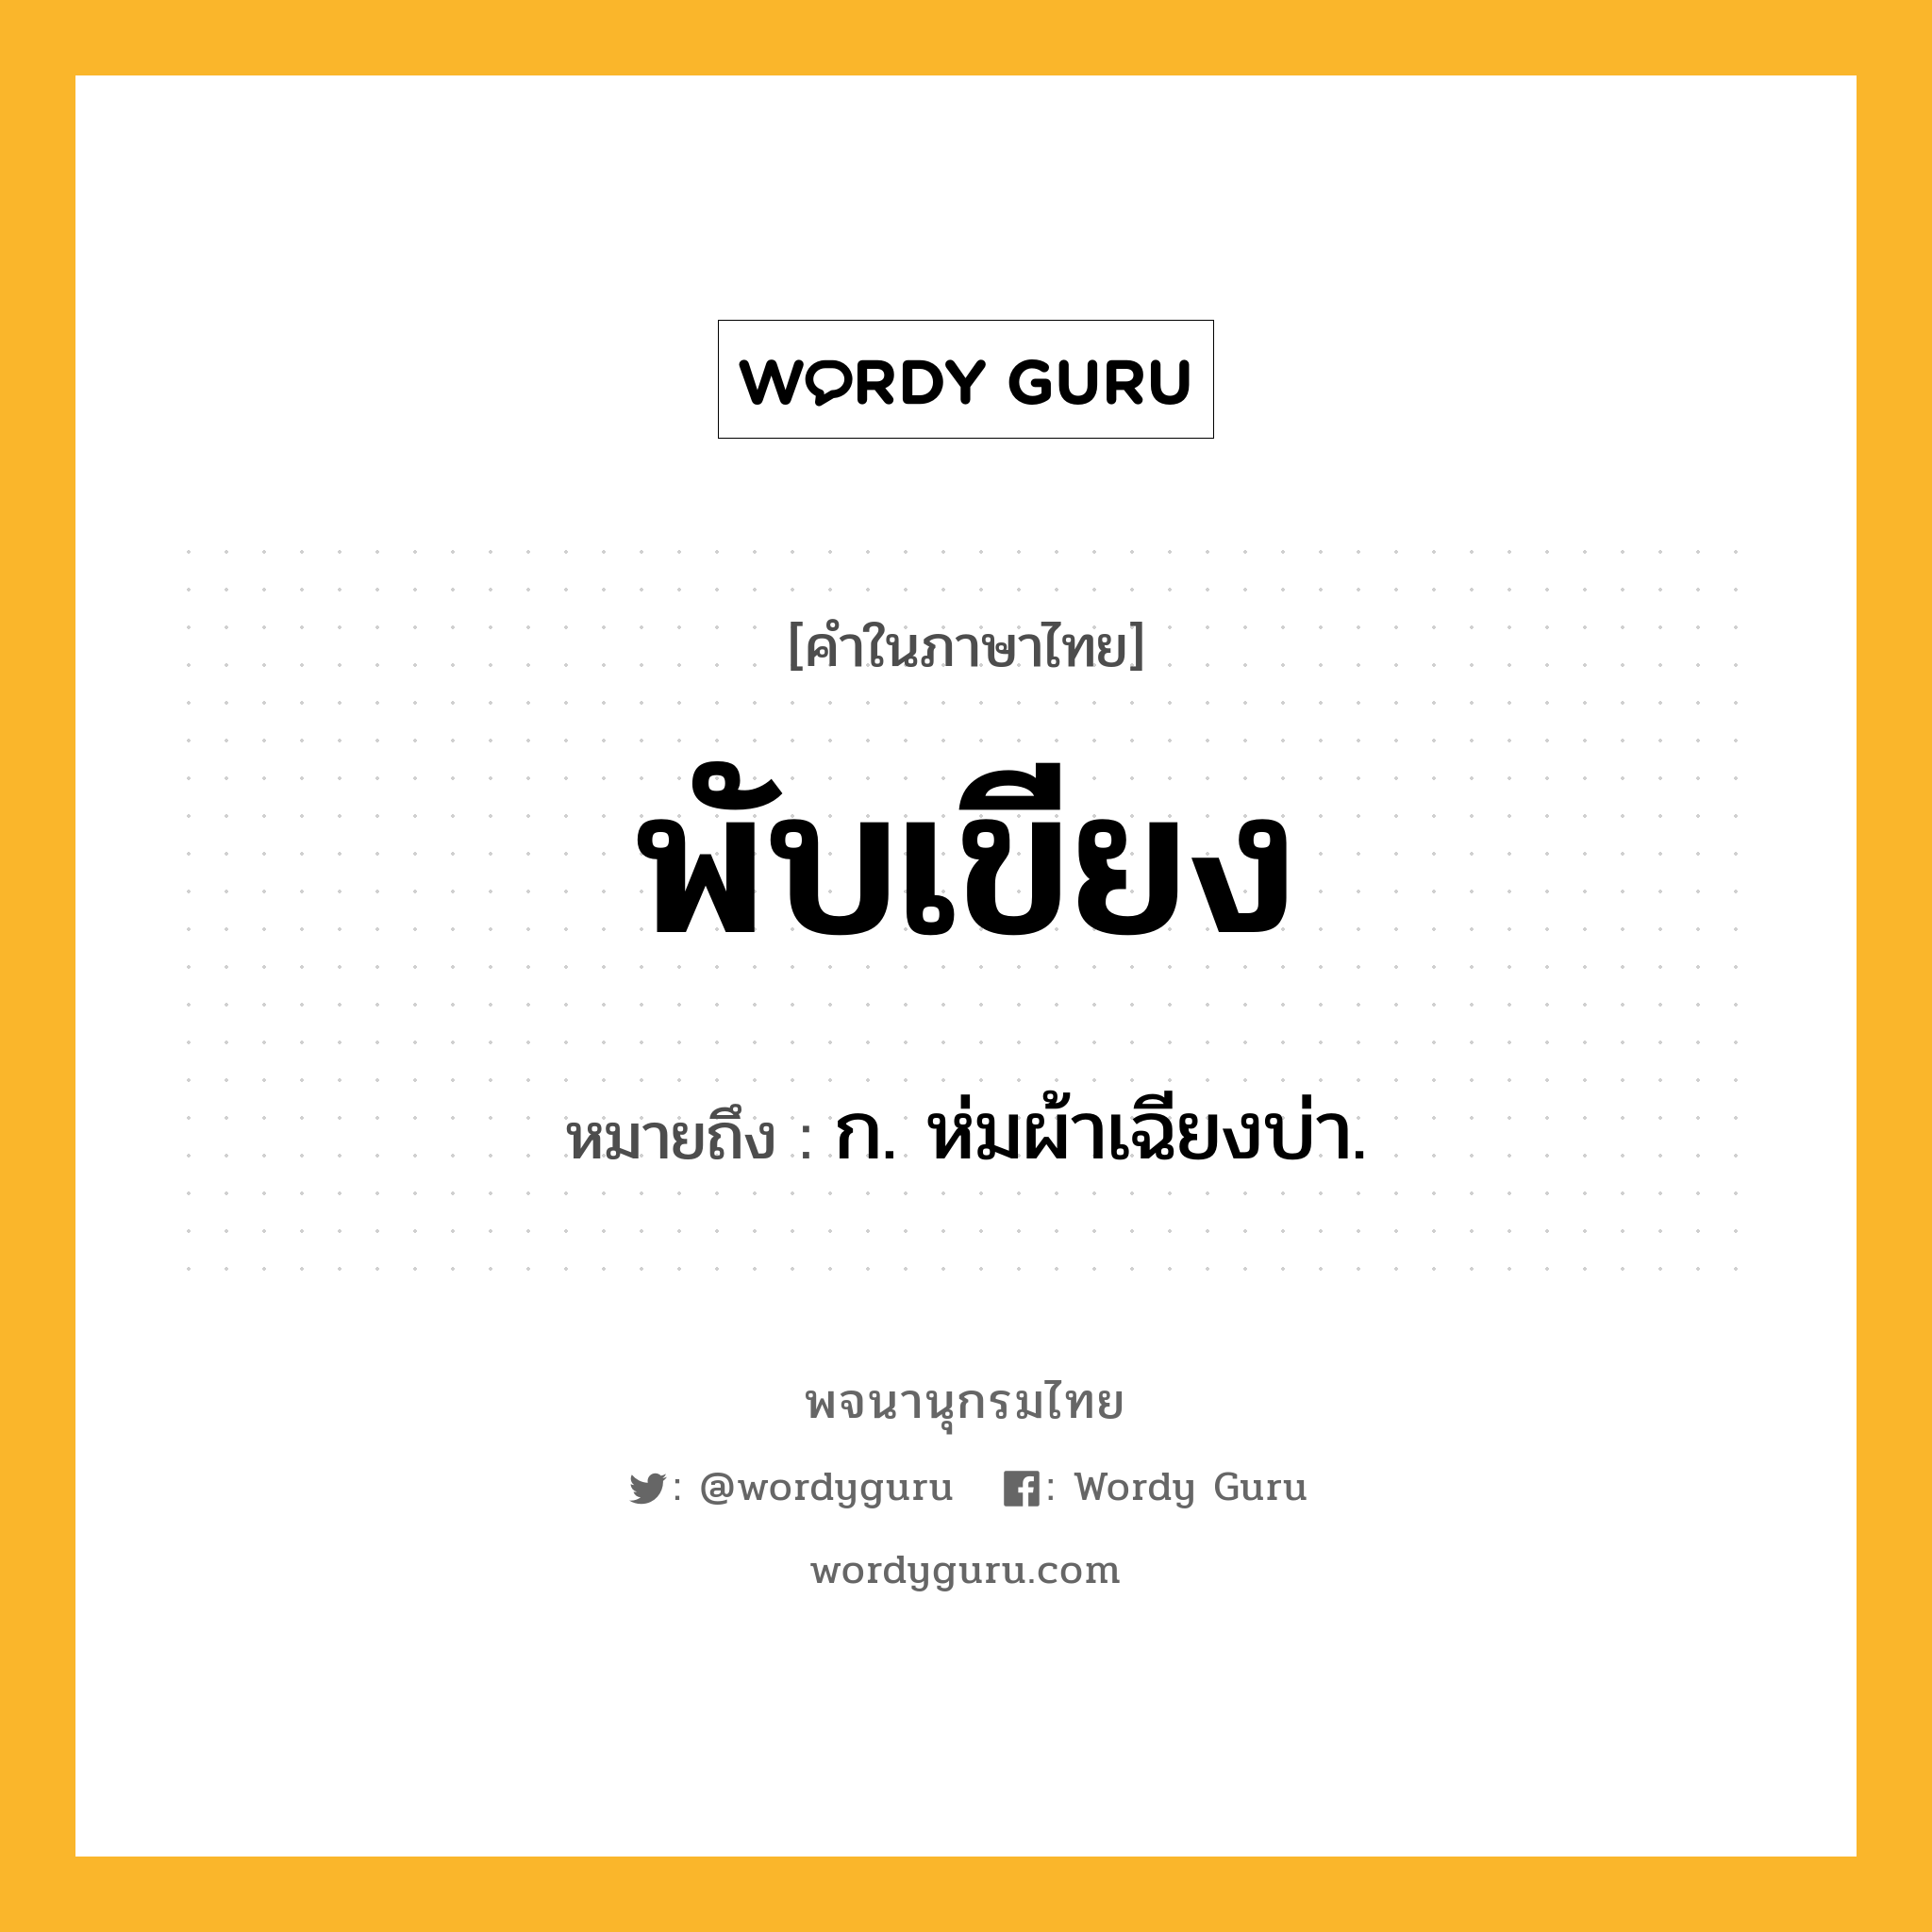 พับเขียง ความหมาย หมายถึงอะไร?, คำในภาษาไทย พับเขียง หมายถึง ก. ห่มผ้าเฉียงบ่า.